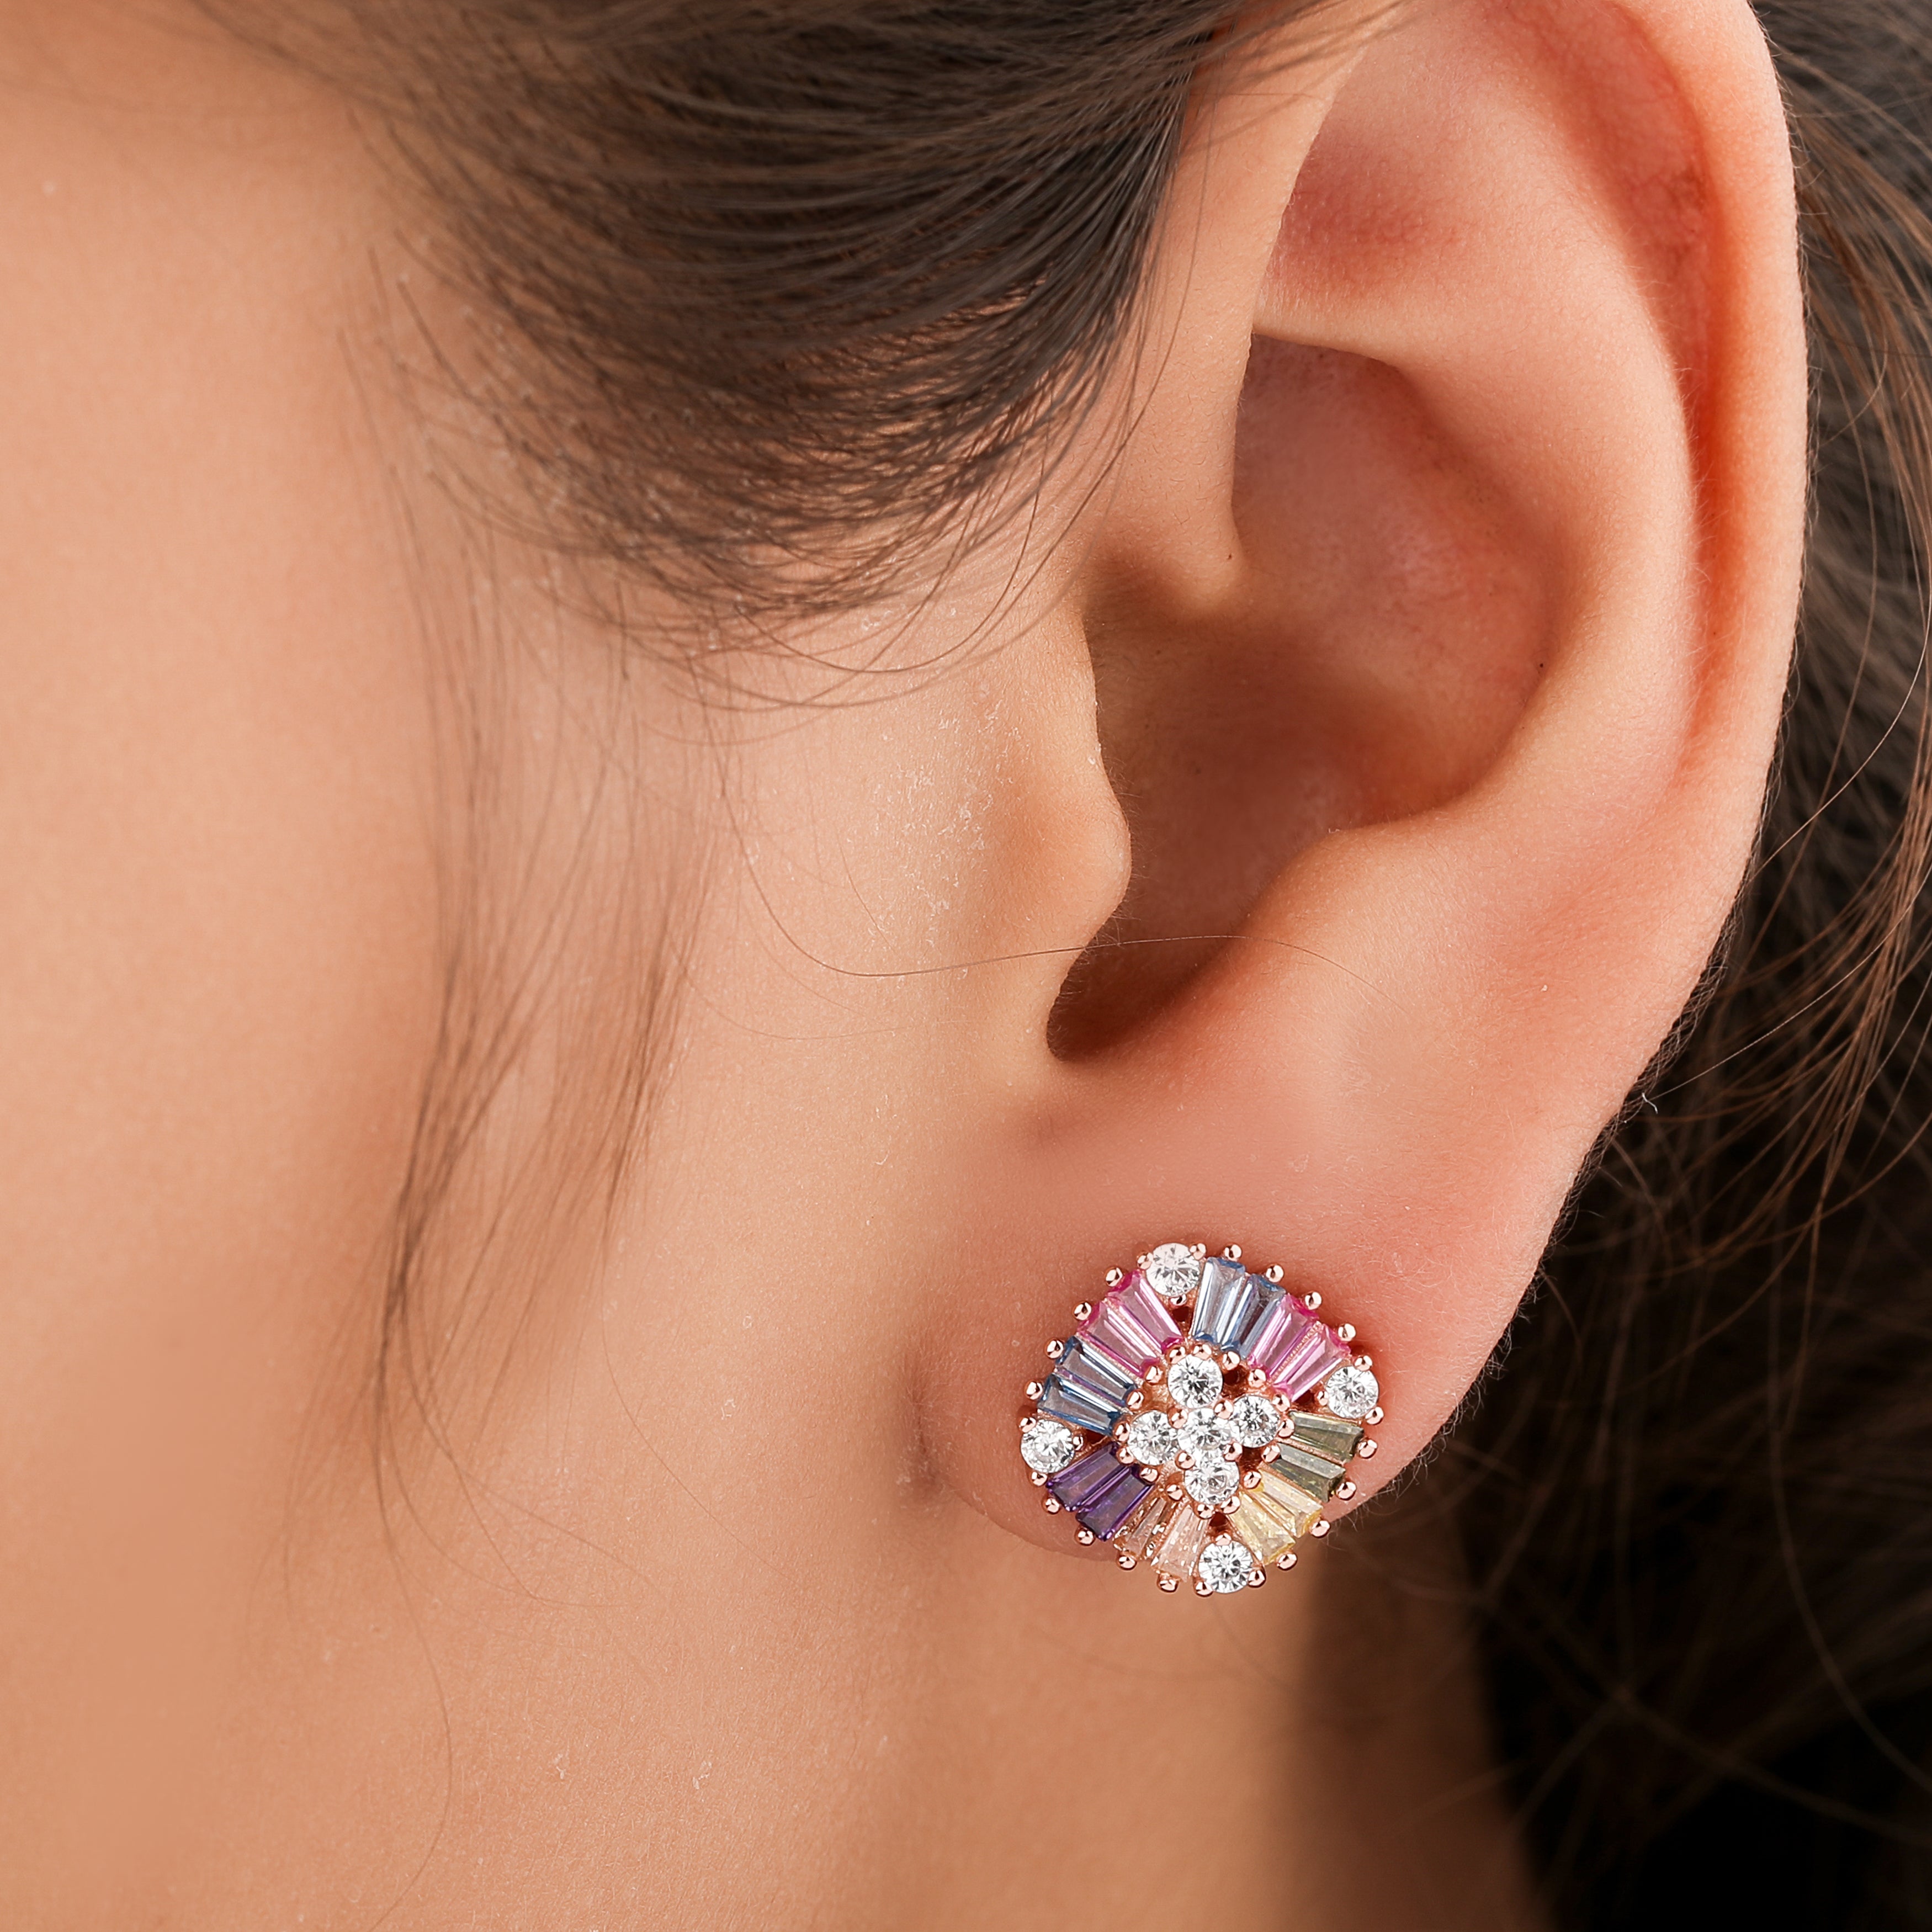 Birthstone earring for kids